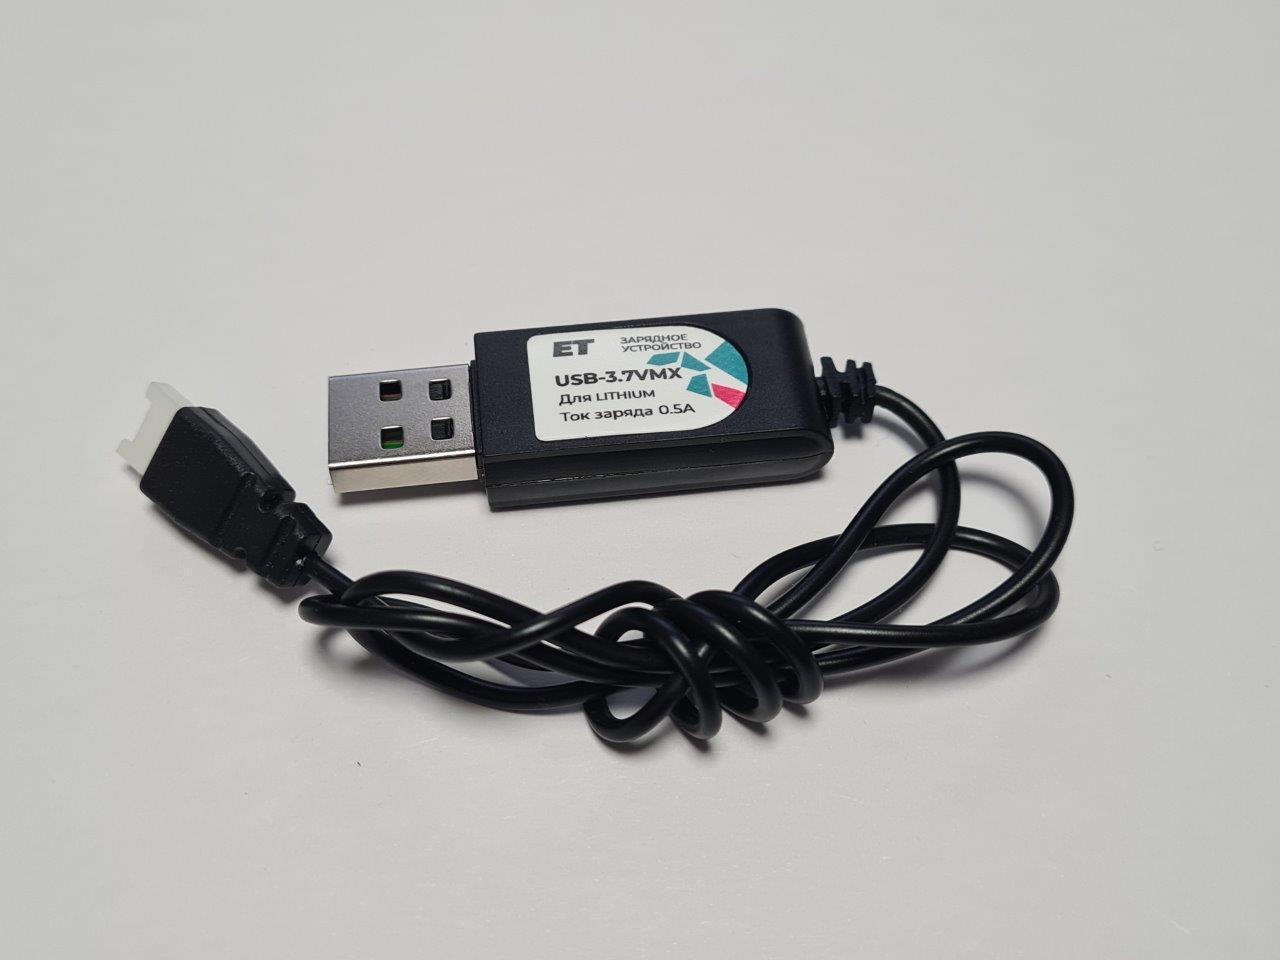 Зарядное устройство для аккумулятора - ET USB-3.7VMX, 500мА, для 1 лития со штекером типа "M"